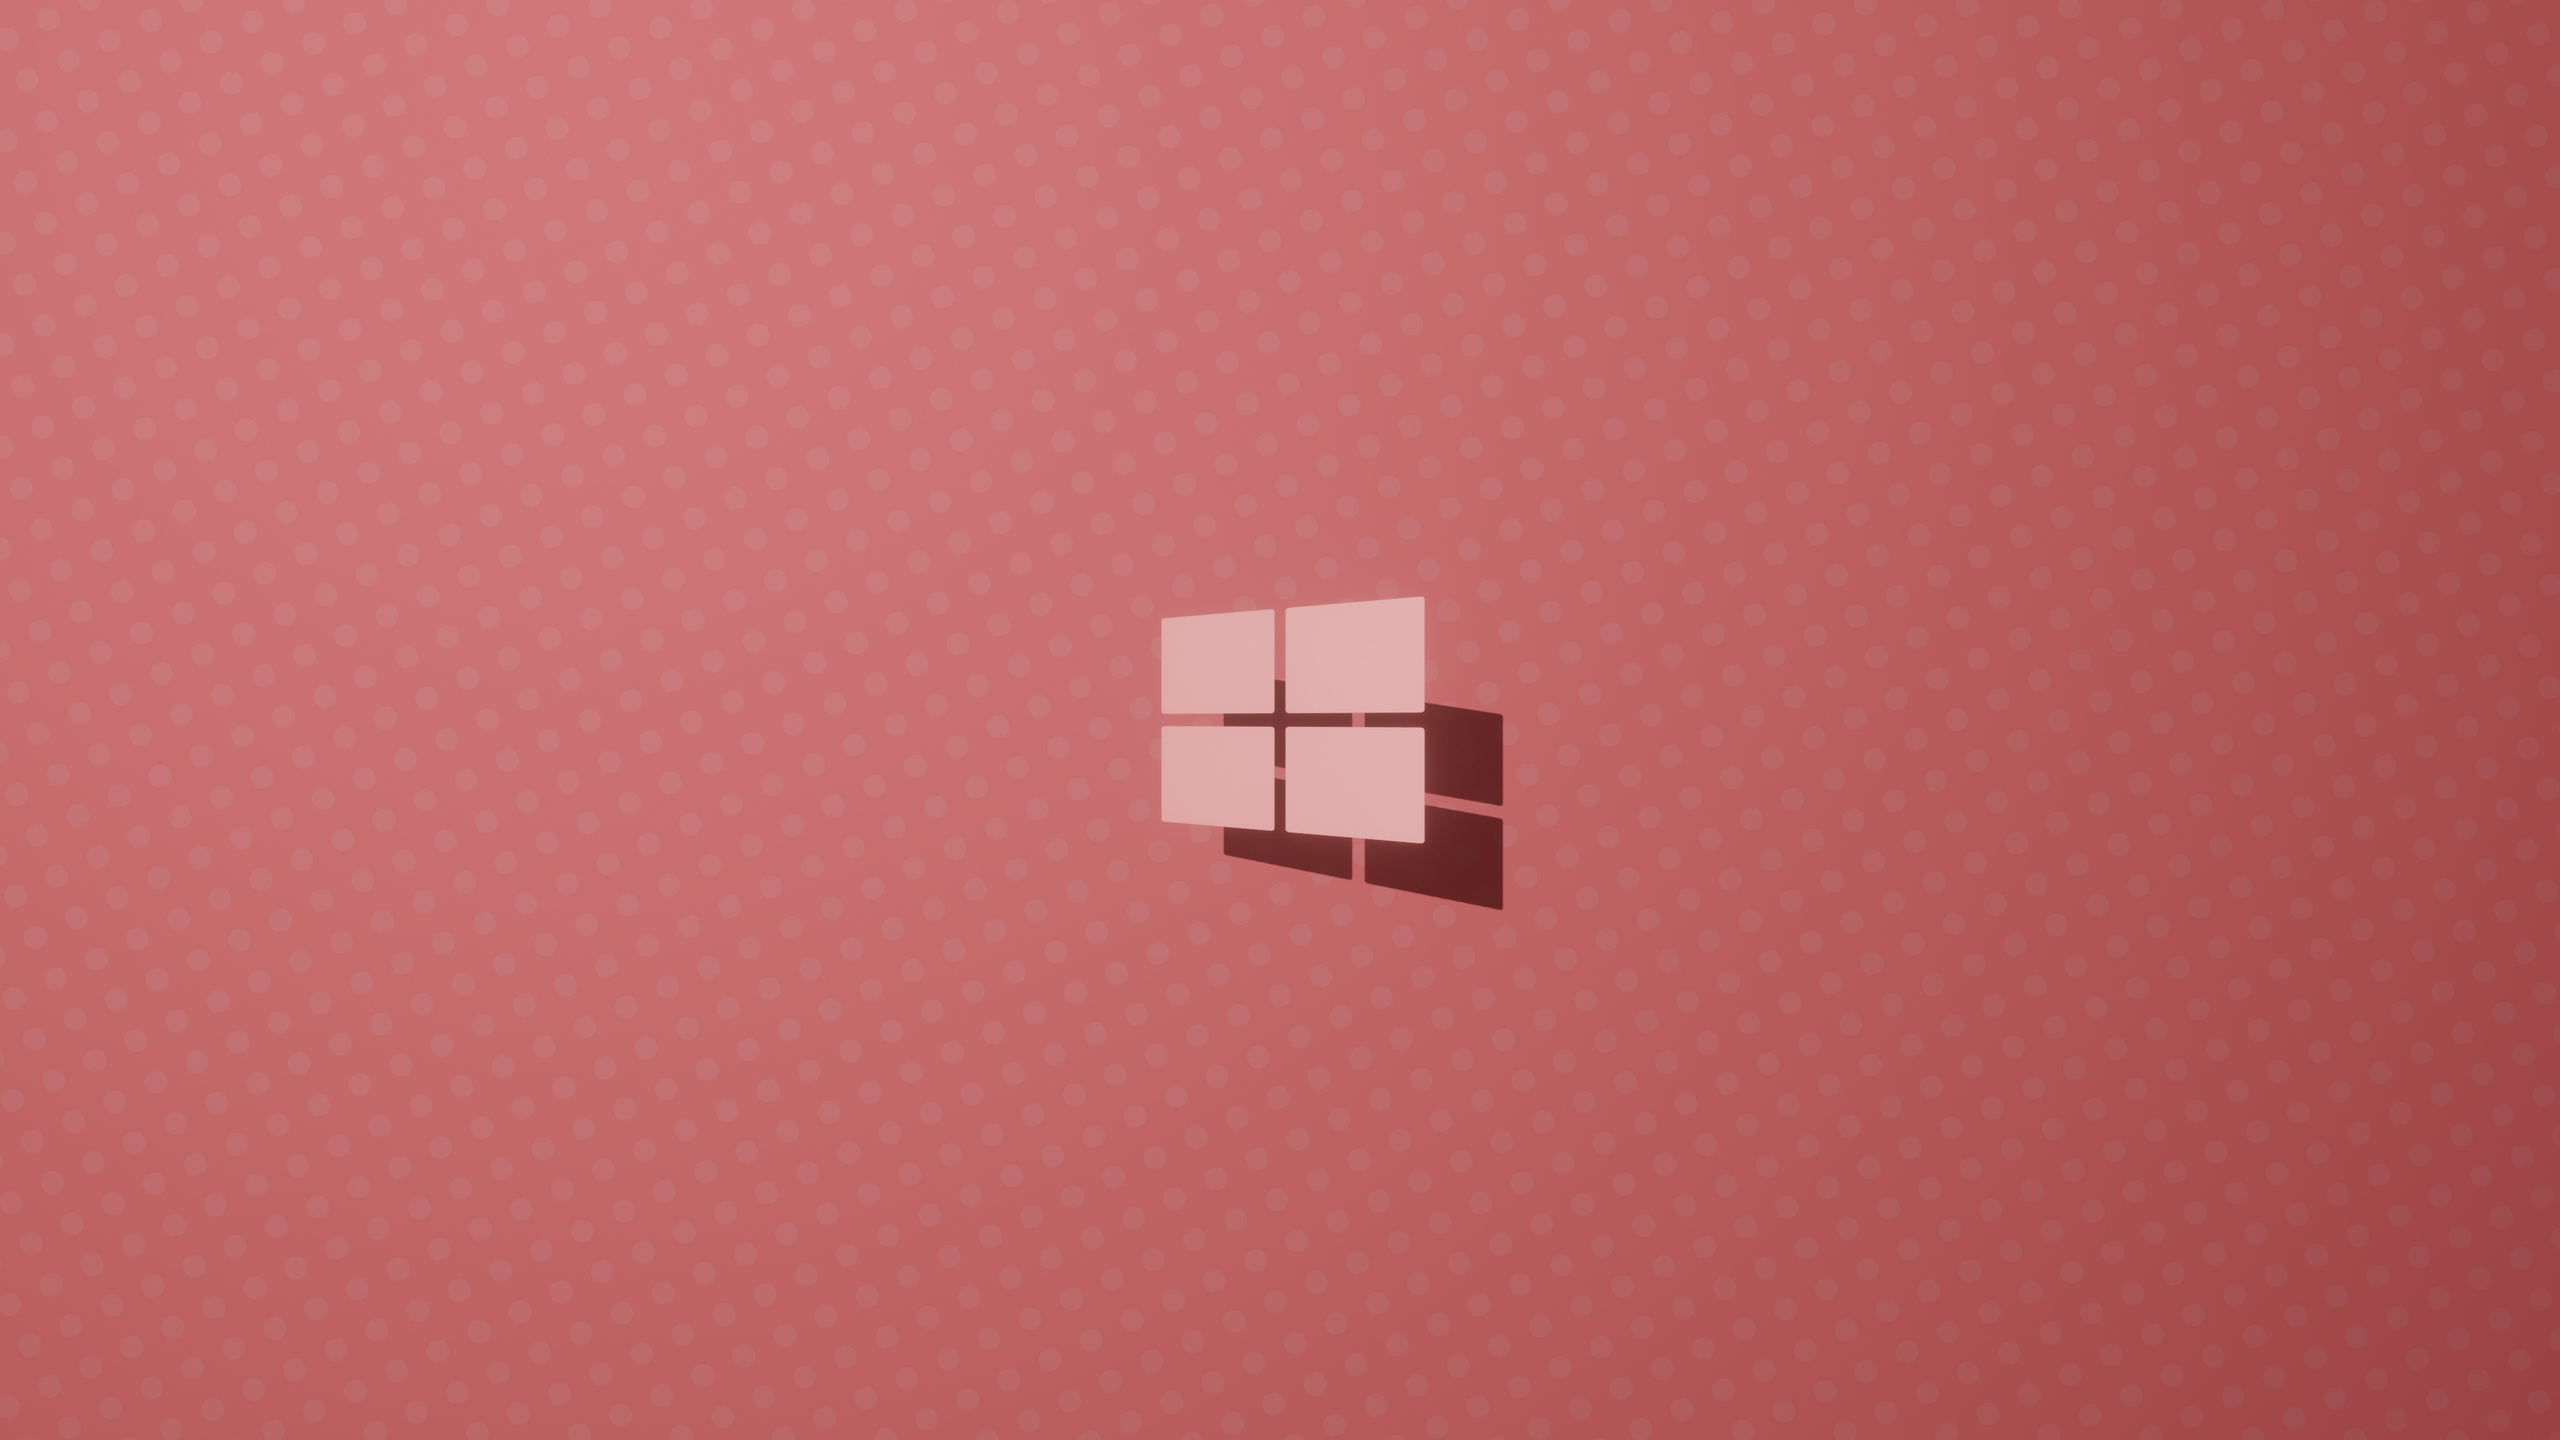 Windows 10 logo hồng độ phân giải 4k sẽ mang đến cho bạn một trải nghiệm đắt giá và thú vị khi sử dụng máy tính. Hình ảnh sắc nét và màu sắc tươi tắn sẽ khiến bạn cảm thấy như đang sống trong thế giới ảo đầy sáng tạo. Hãy tải ngay để khám phá những điều tuyệt vời mà đồ họa đỉnh cao có thể giúp bạn trải nghiệm.